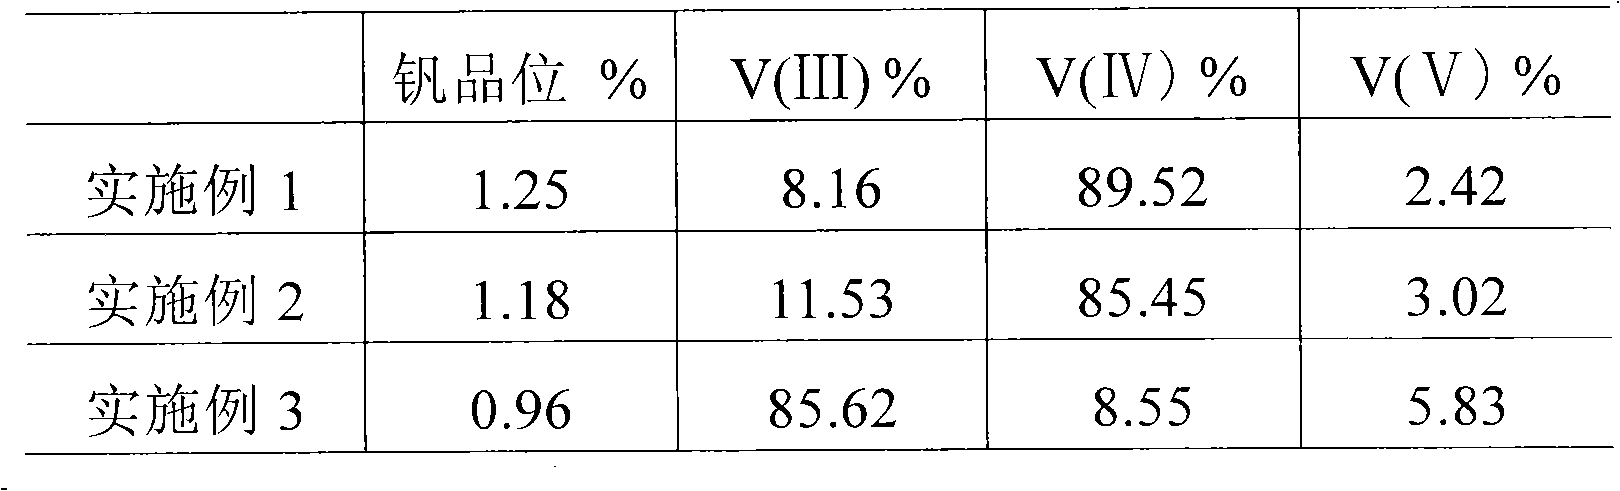 Leaching method of vanadium in vanadium-containing stone coal